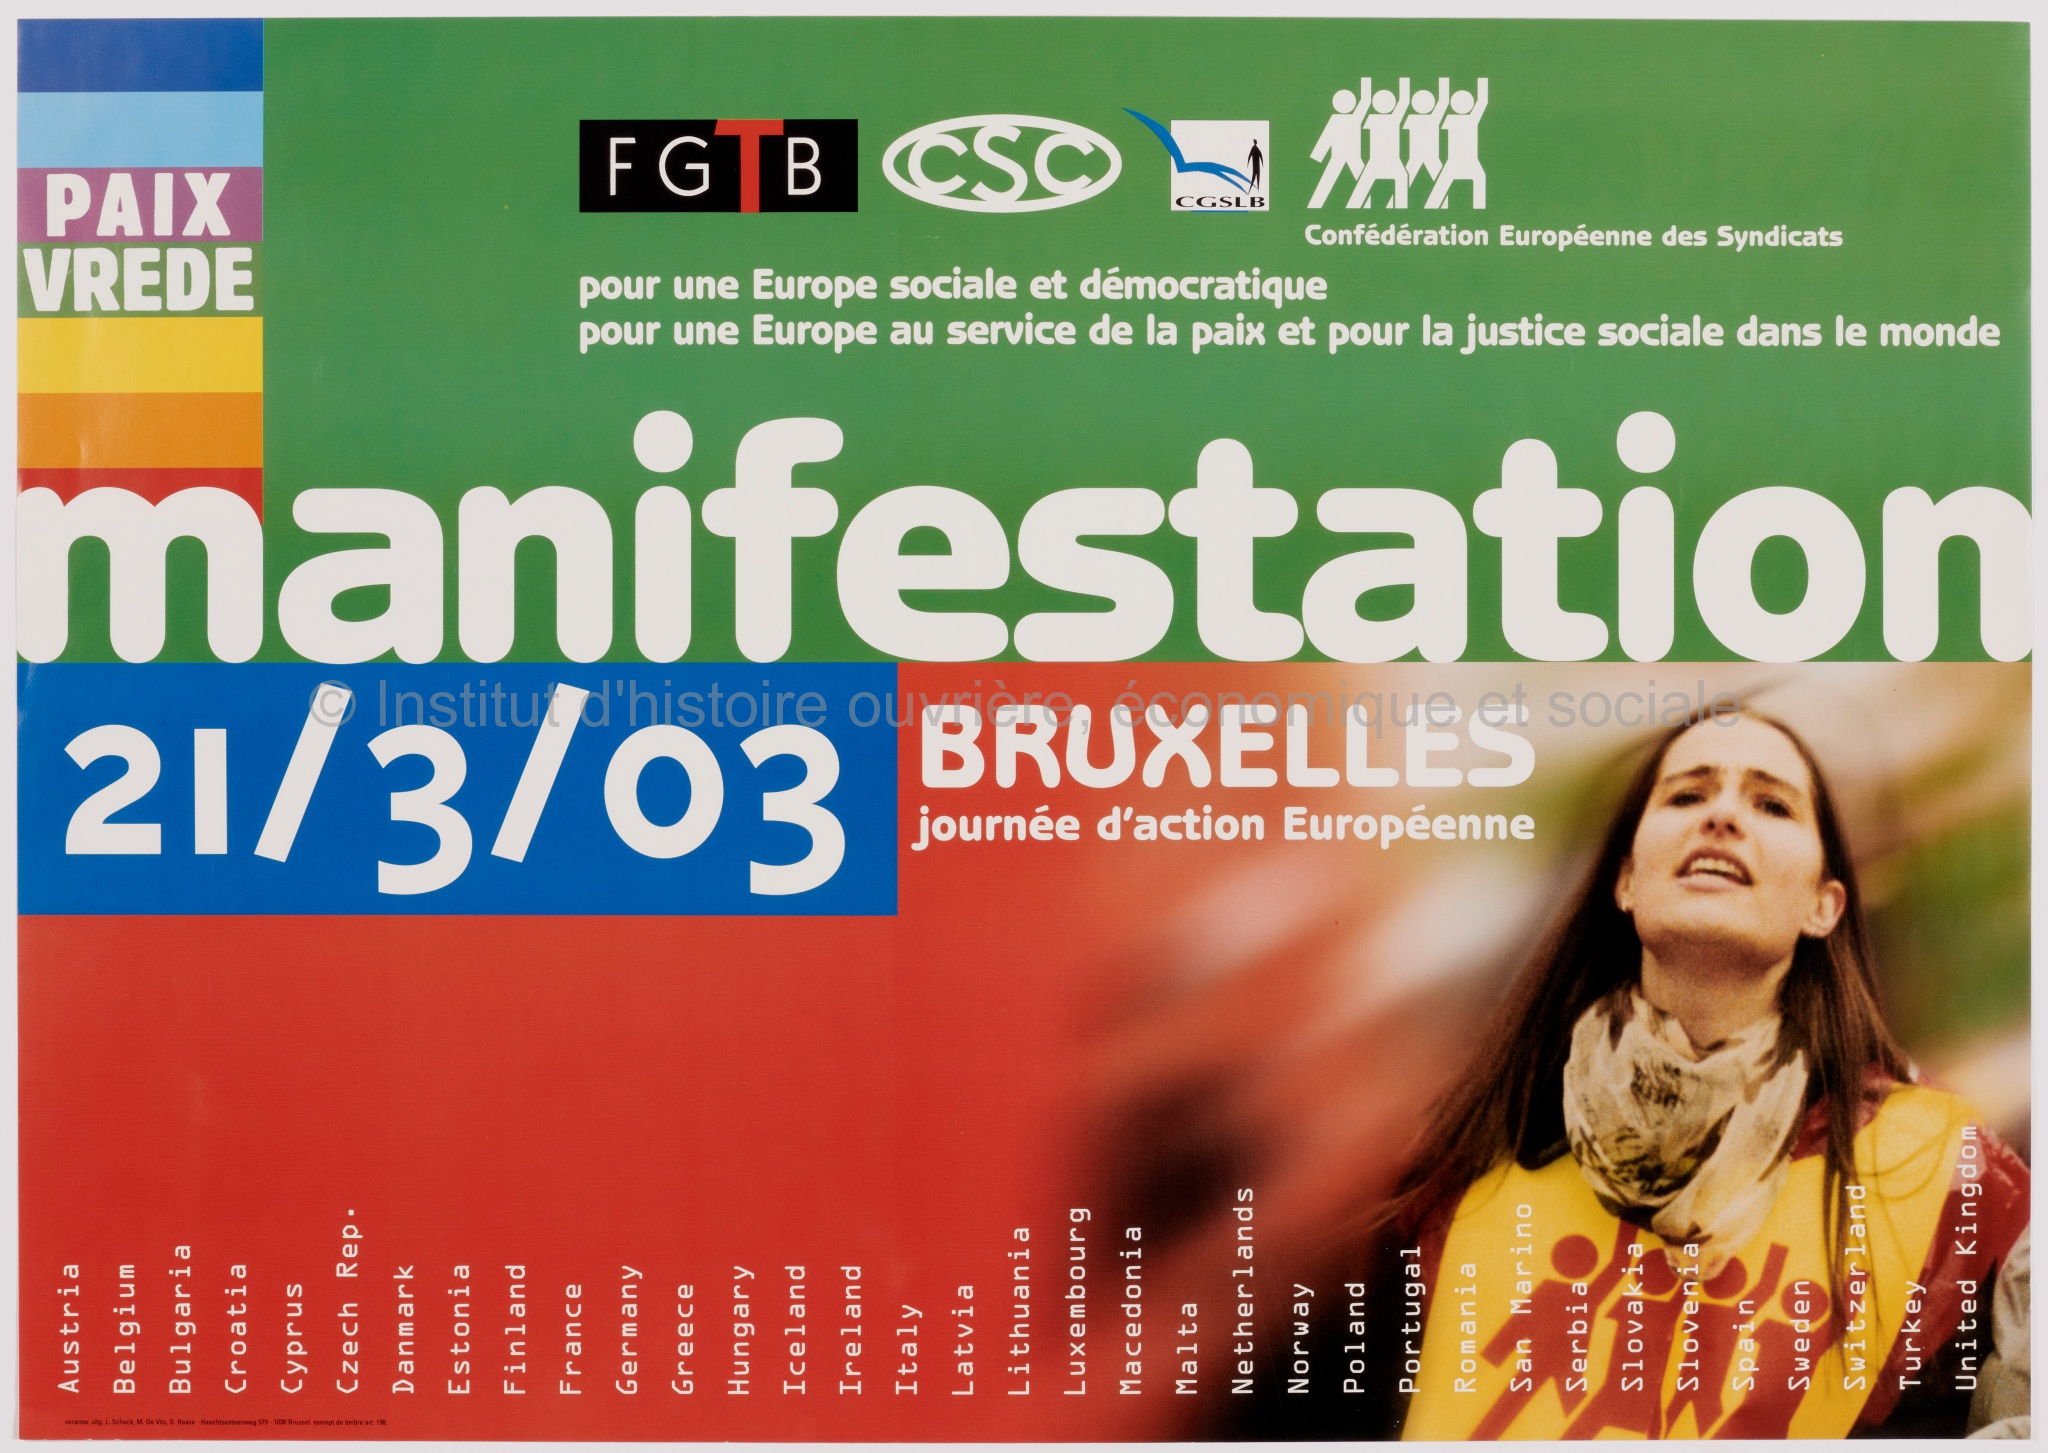 Manifestation 21/3/03 : Bruxelles, journée d'action européenne